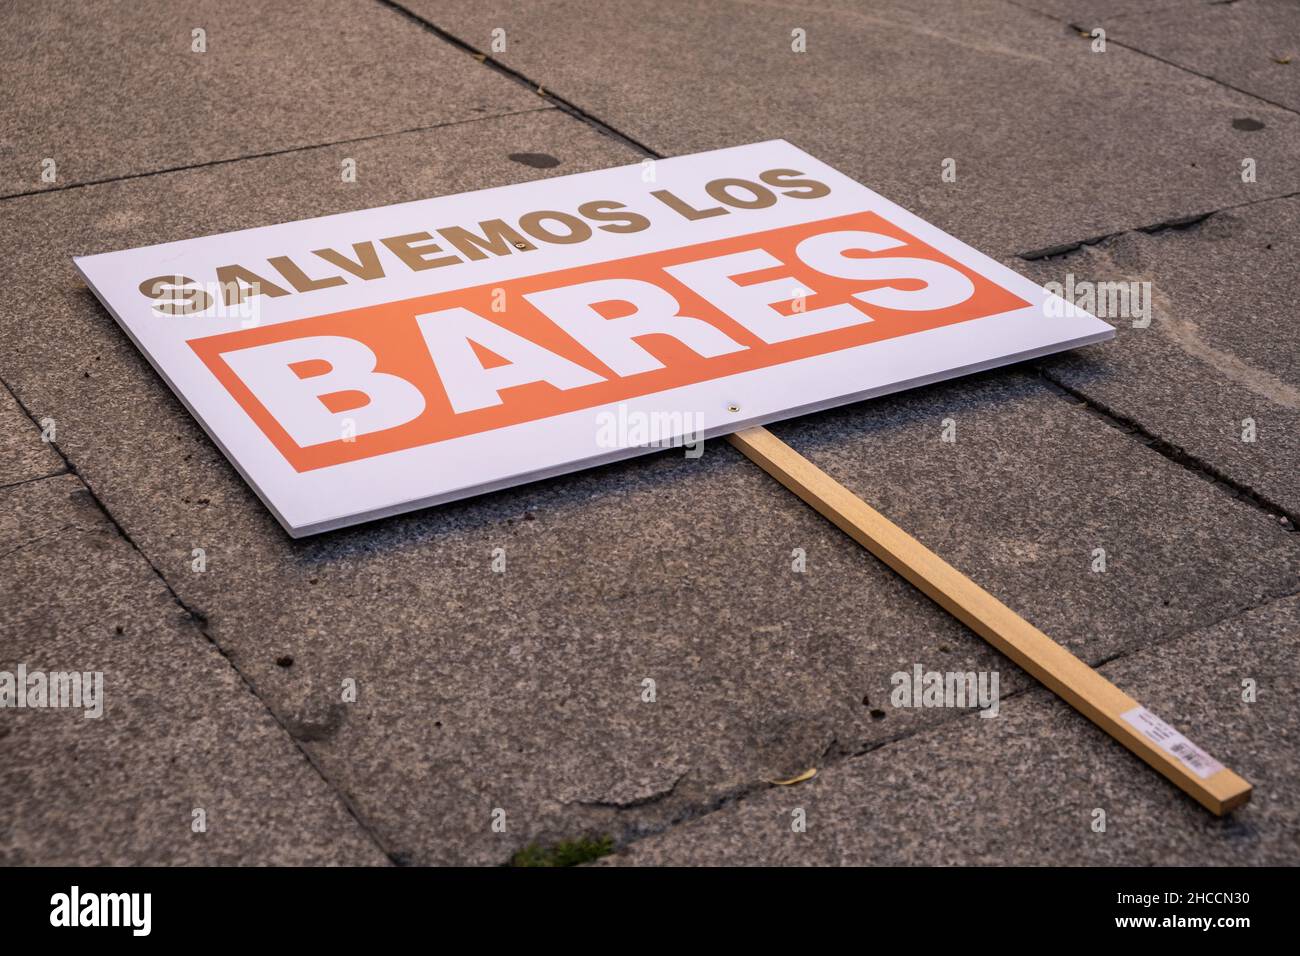 Valencia, Spagna; 21 gennaio 2021: "Salva le barre" segno sul terreno durante una dimostrazione da parte del settore locanda. Foto Stock